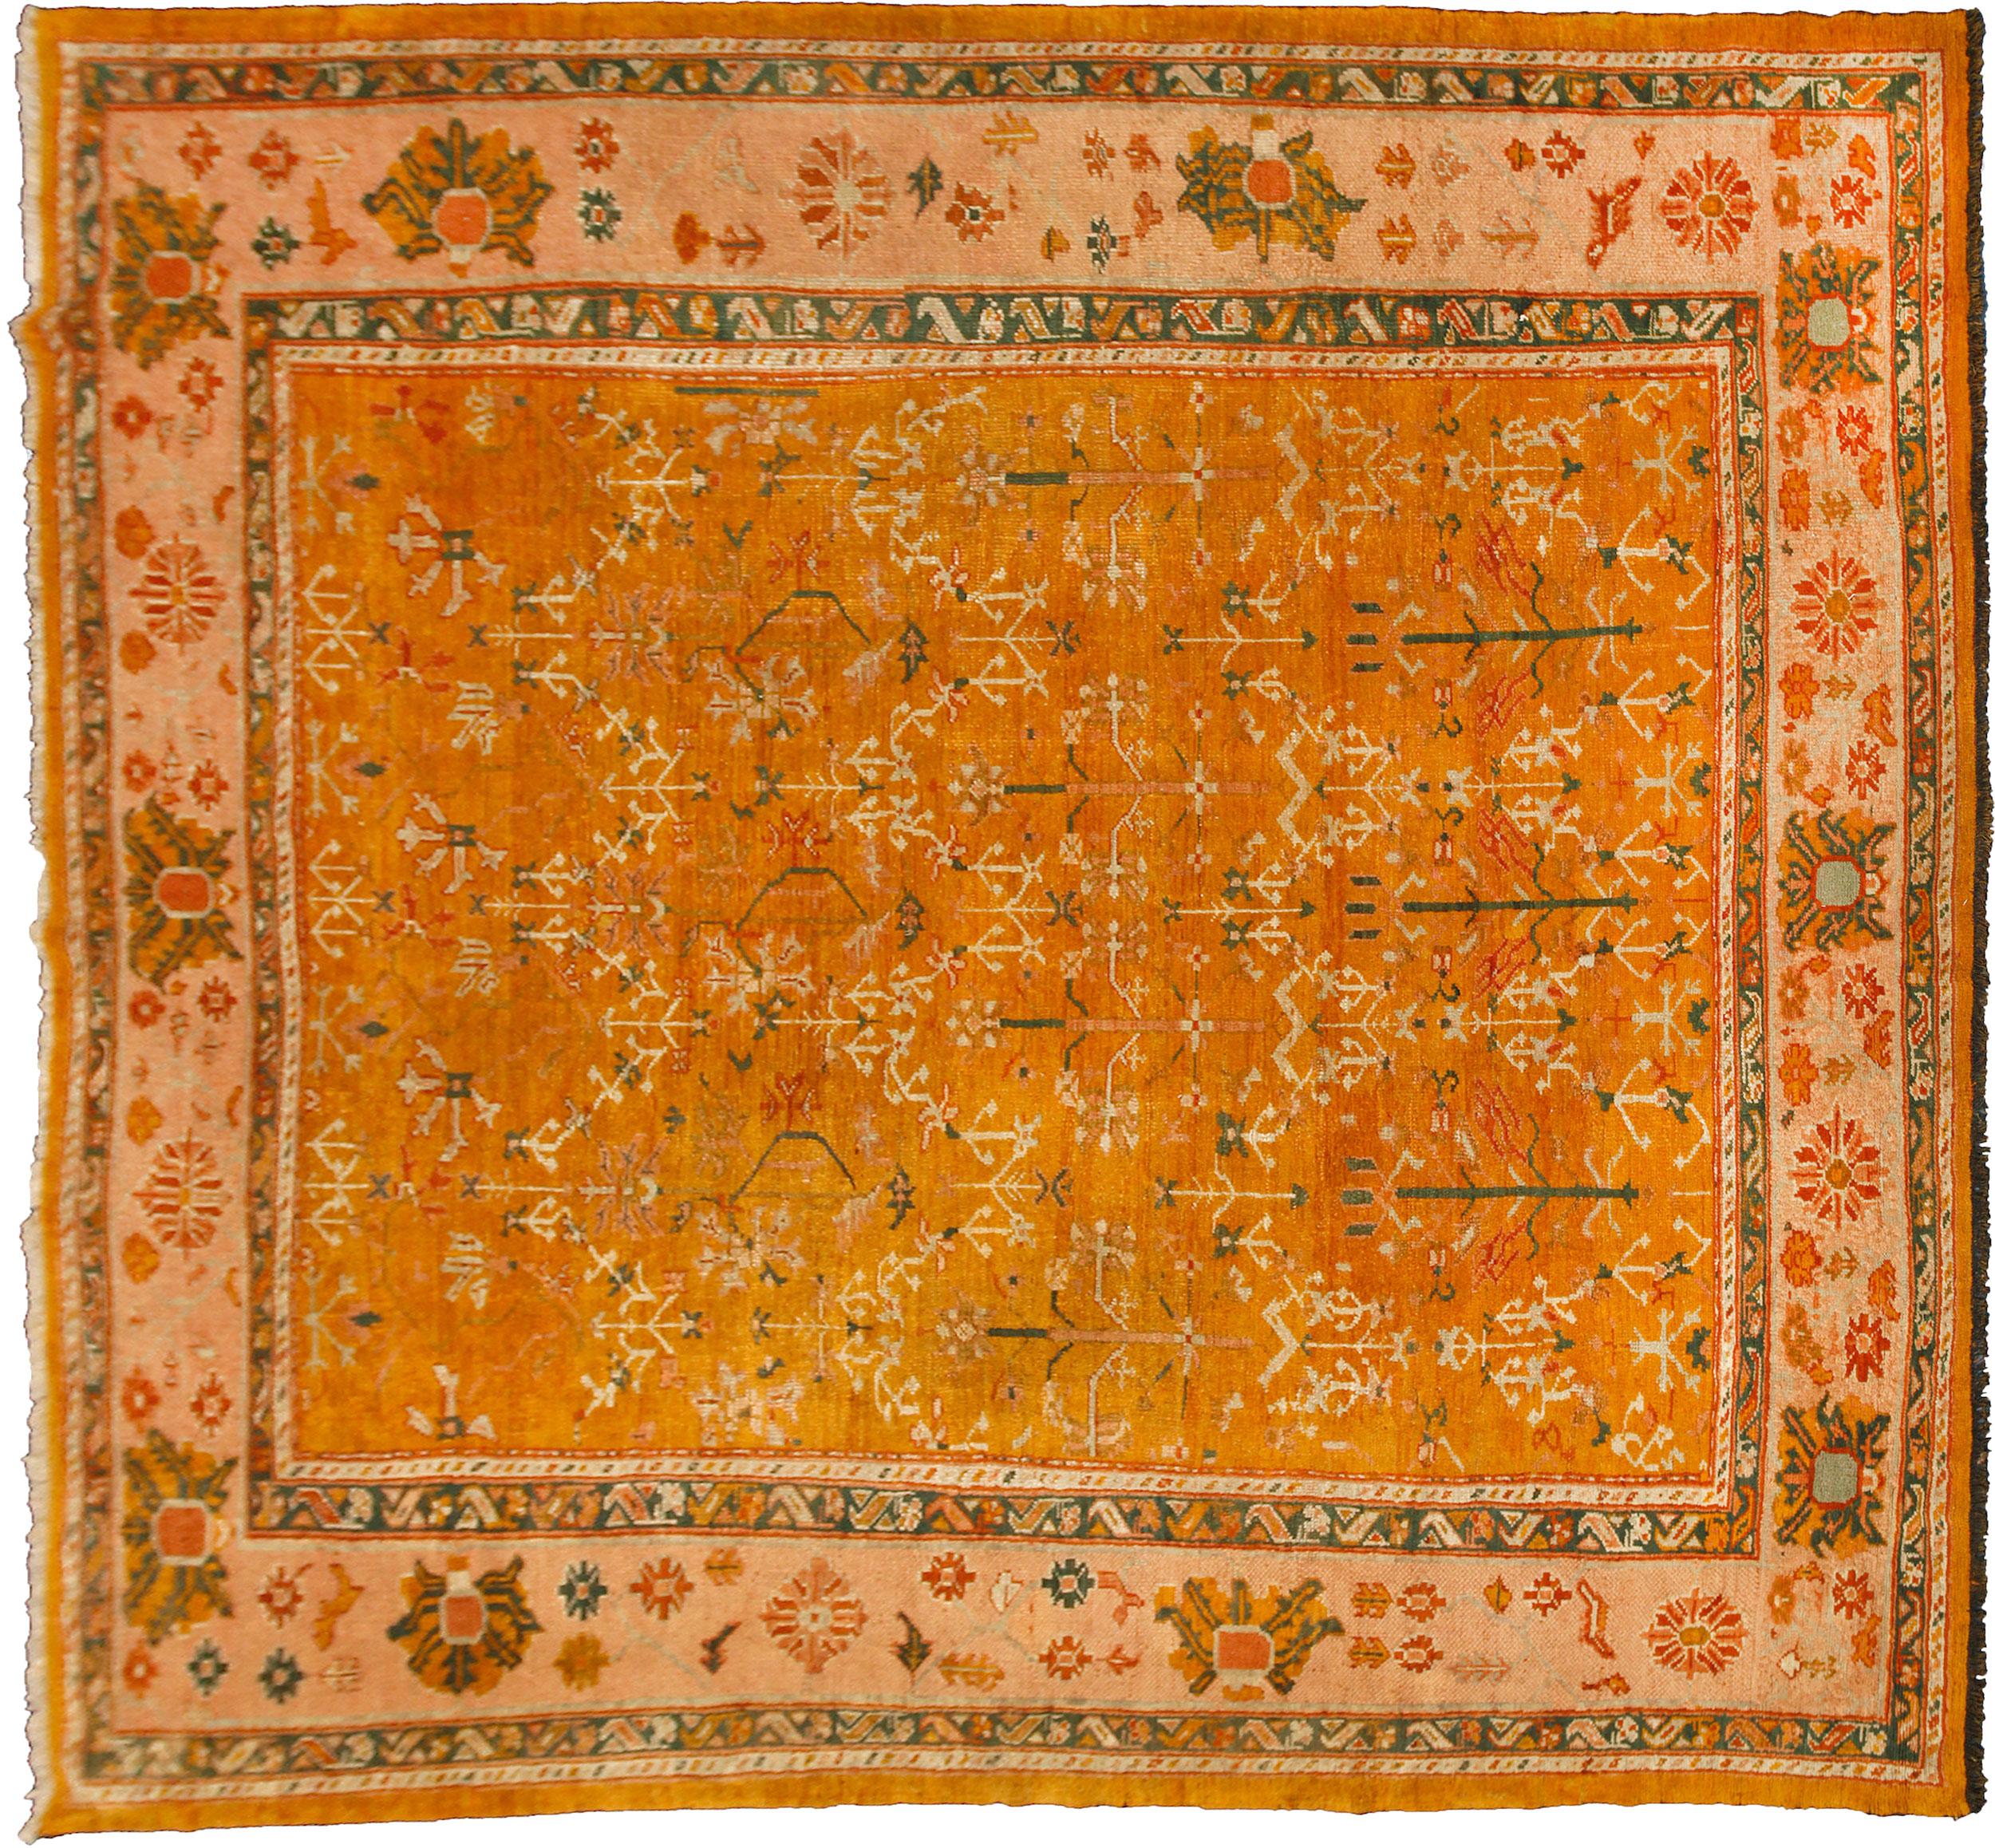 Seltener antiker Uschak-Teppich. Es ist sehr schwierig, Ushak in dieser quadratischen Größe zu finden. Der schöne gelbe Grund ist mit einem flächendeckenden Strauchmotiv und einer hellen, pfirsichfarbenen Blumenbordüre verziert, was dieses Stück